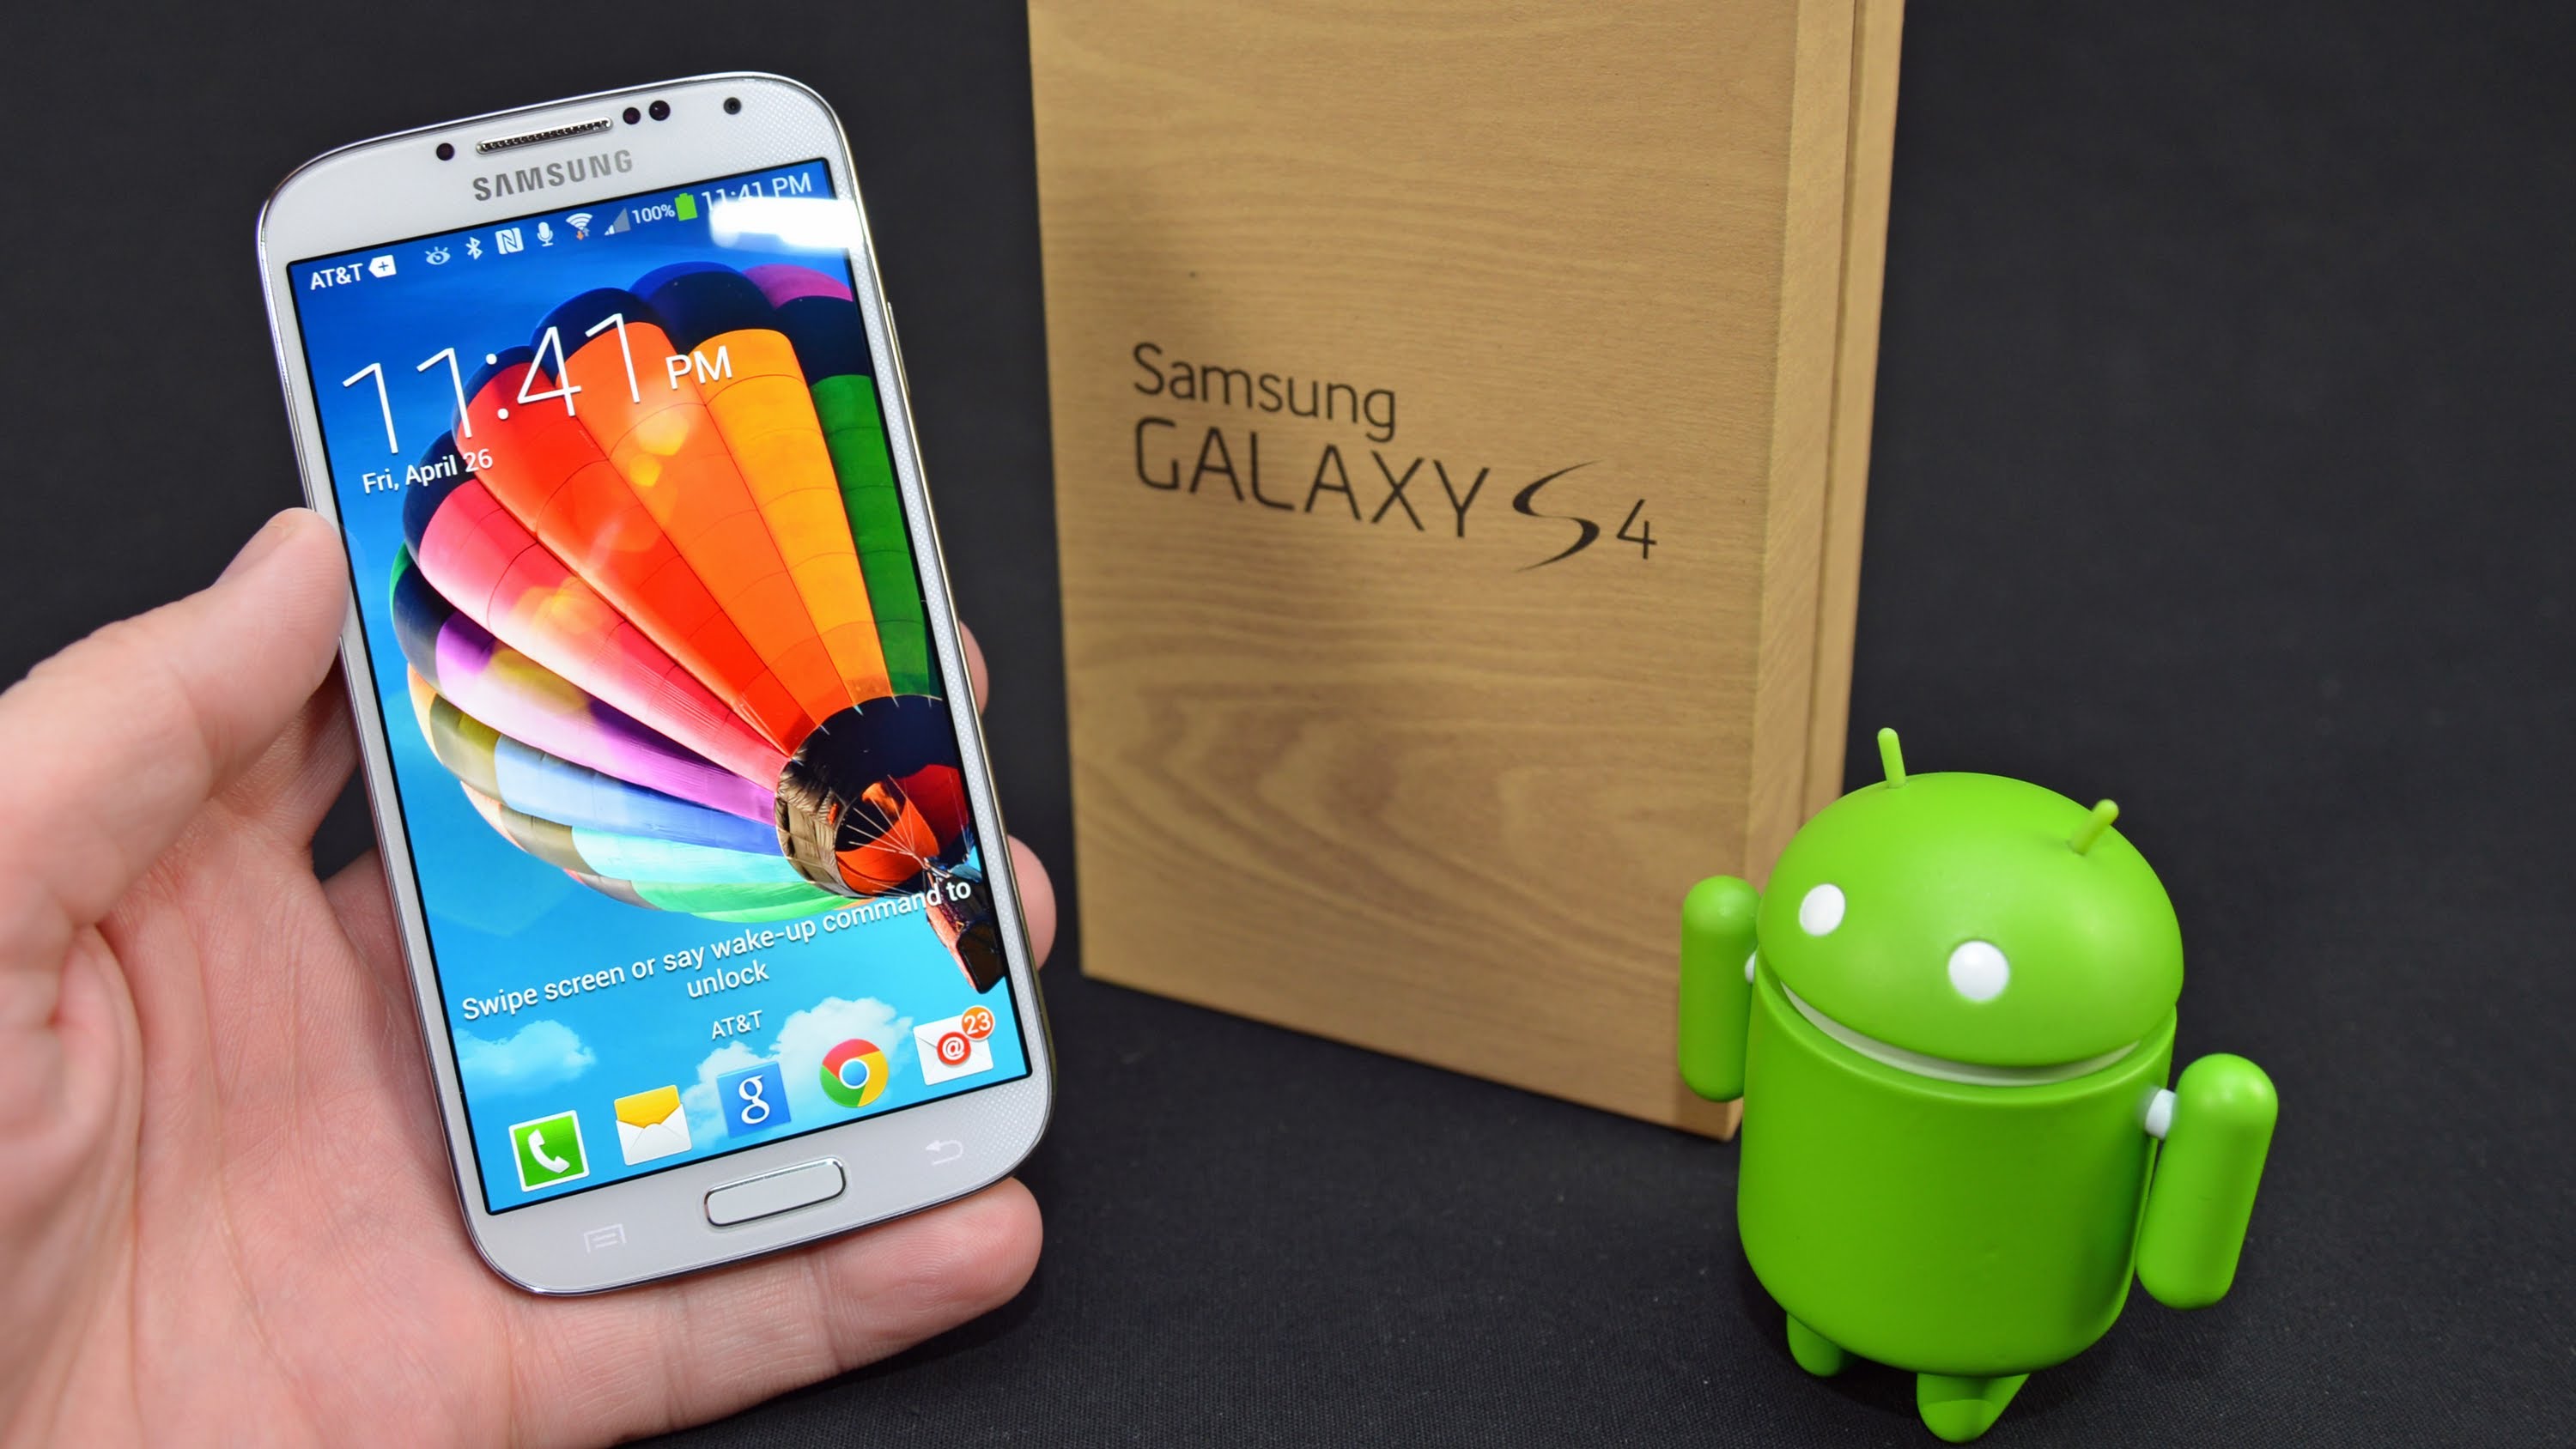 Samsung galaxy 14 андроид. Samsung Galaxy s4. Samsung Galaxy s4 Mini андроид. Samsung Galaxy s4 2013. Samsung Galaxy s андроид.